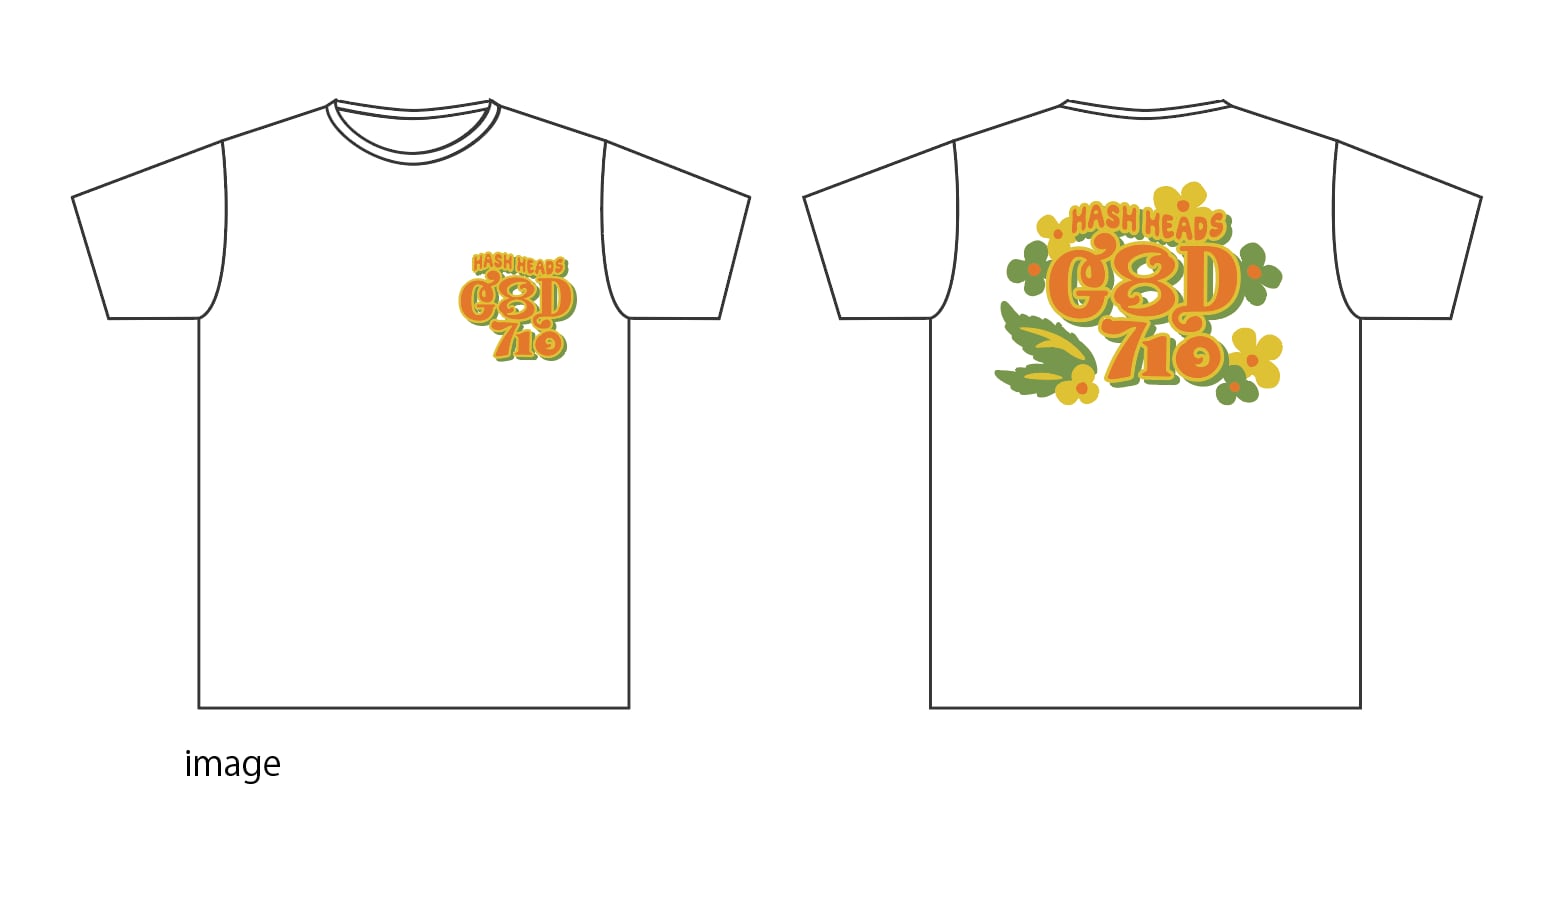 G8D710 Tshirts / design by Yusuke Komori